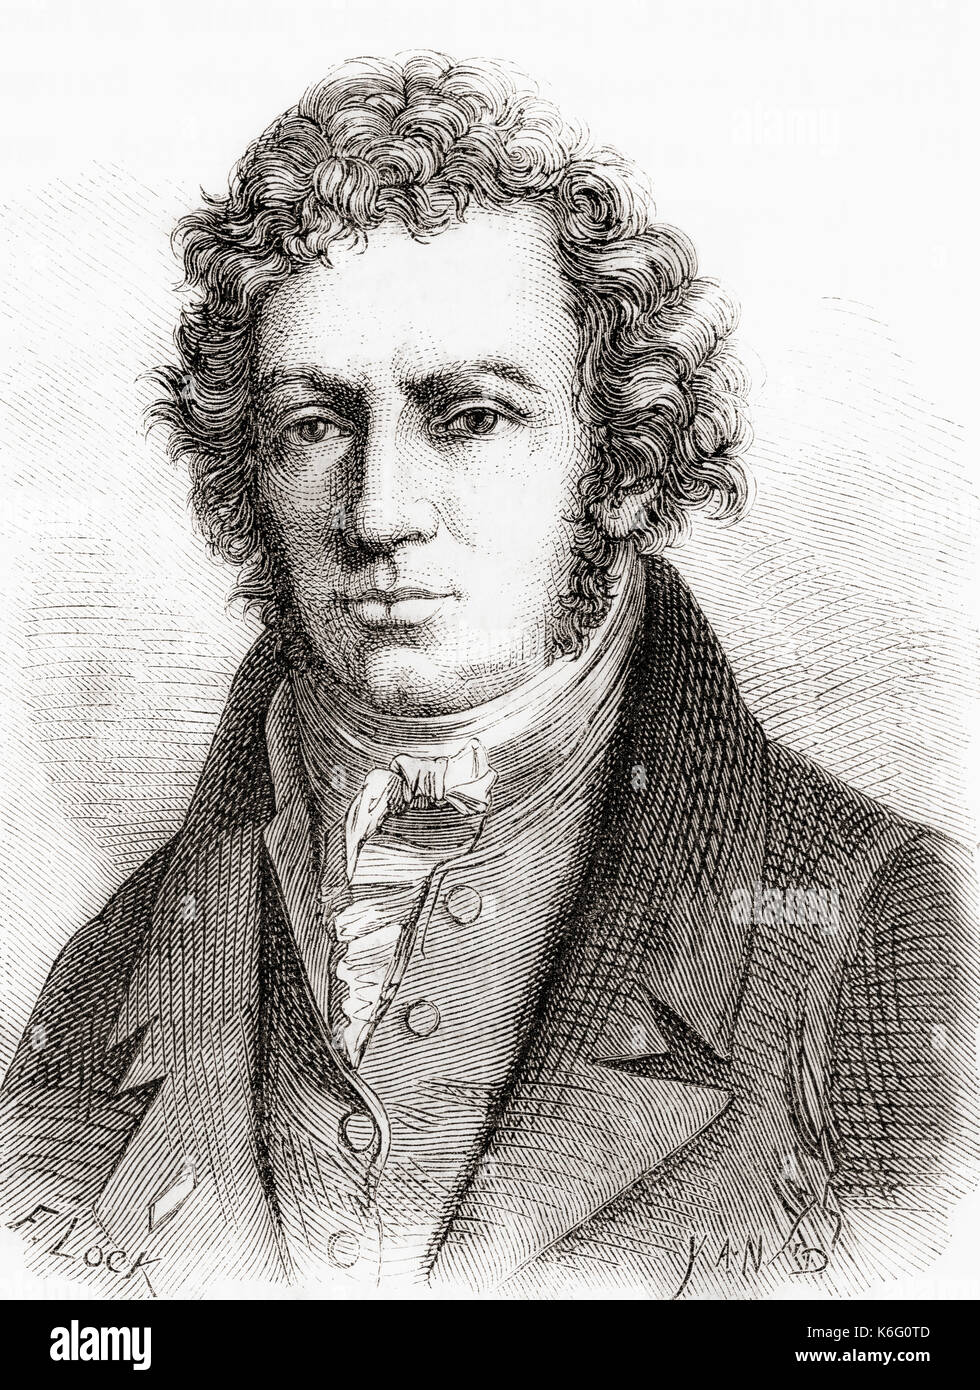 André-Marie Ampère, 1775 – 1836. Physicien et mathématicien français, l'un des fondateurs de la science de l'électromagnétisme classique, qu'il a appelé l'électrodynamique. De les Merveilles de la Science, publié en 1870. Banque D'Images